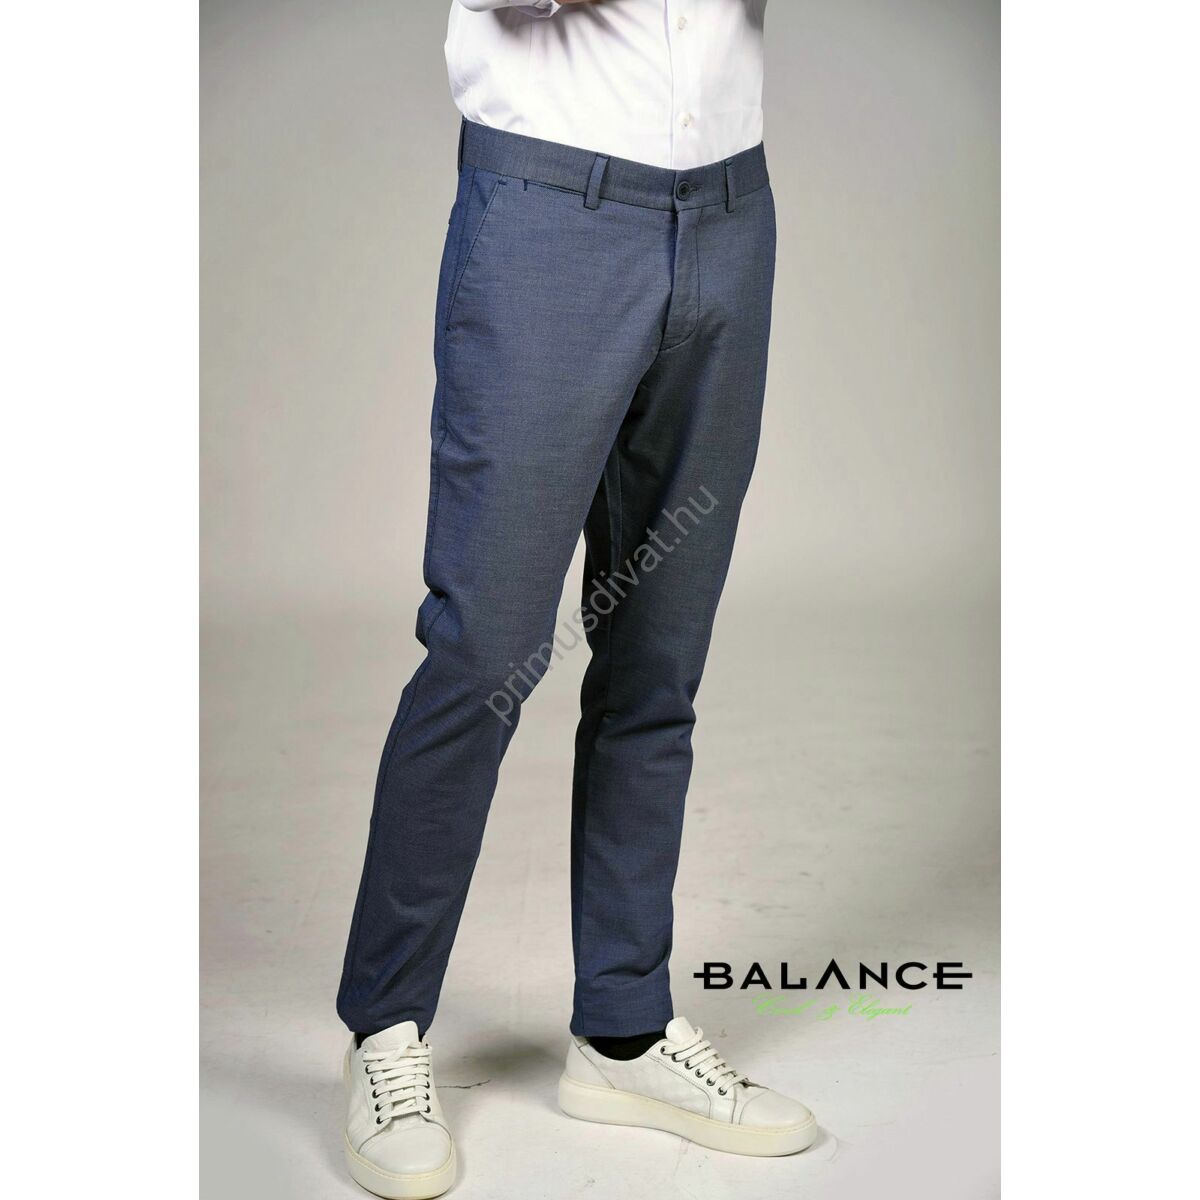 Balance kék tűpöttyös rugalmas szövet anyagú, svédzsebes Chinco nadrág